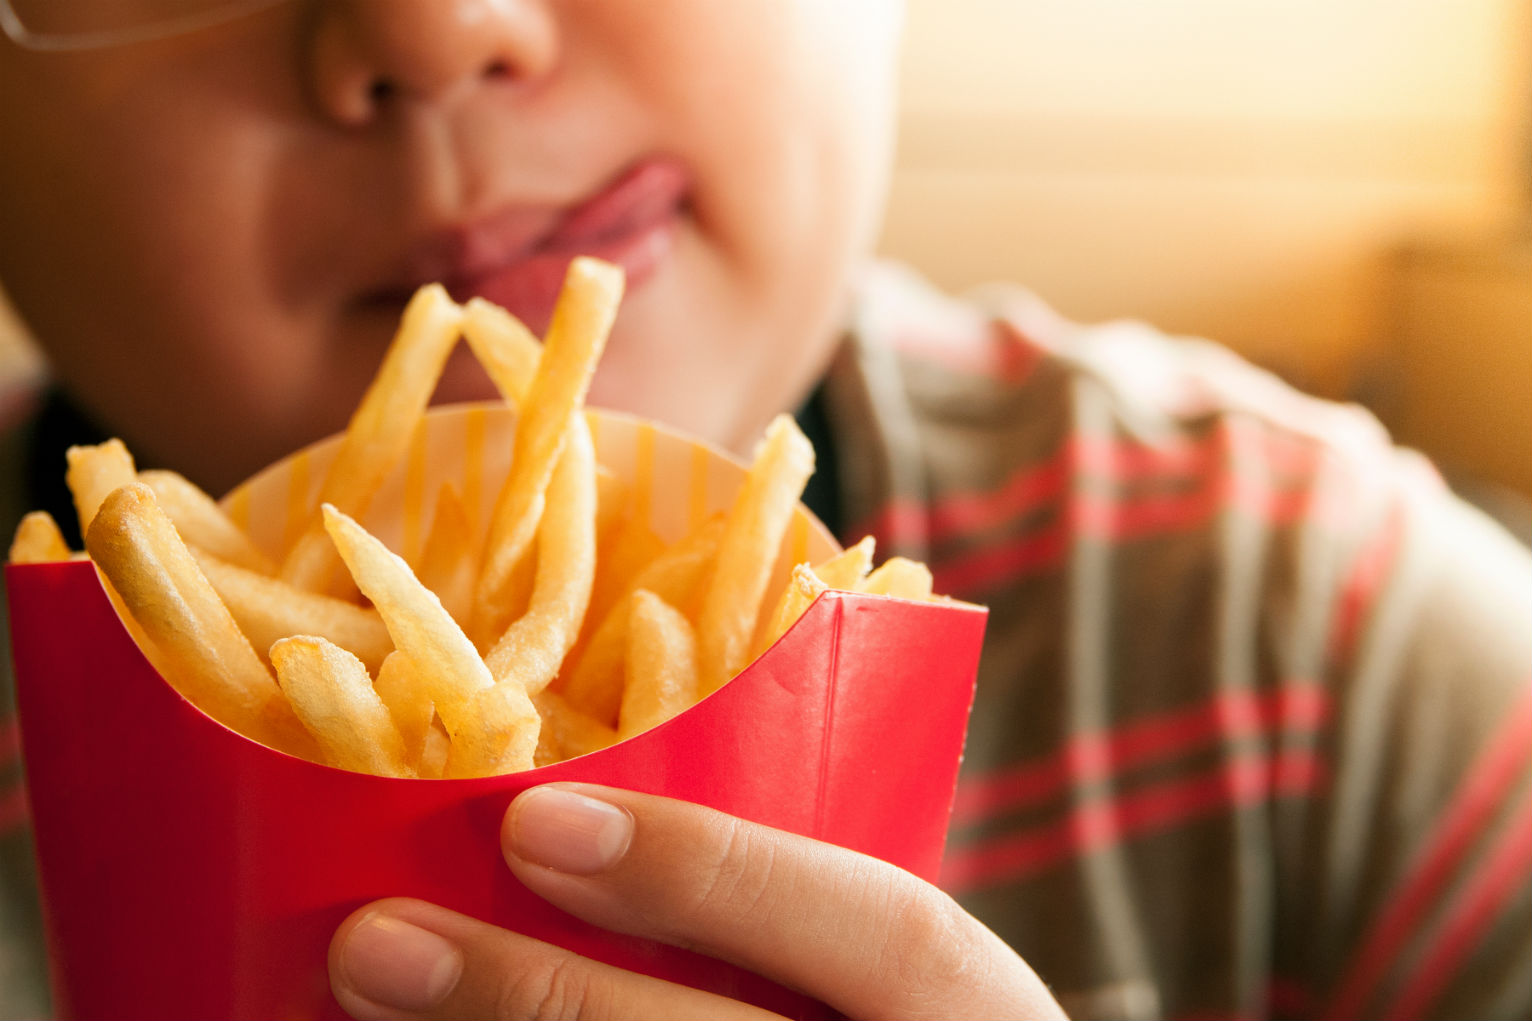 “L’Obesità è un fattore determinante nella malattia da Covid 19 anche nei bambini”.